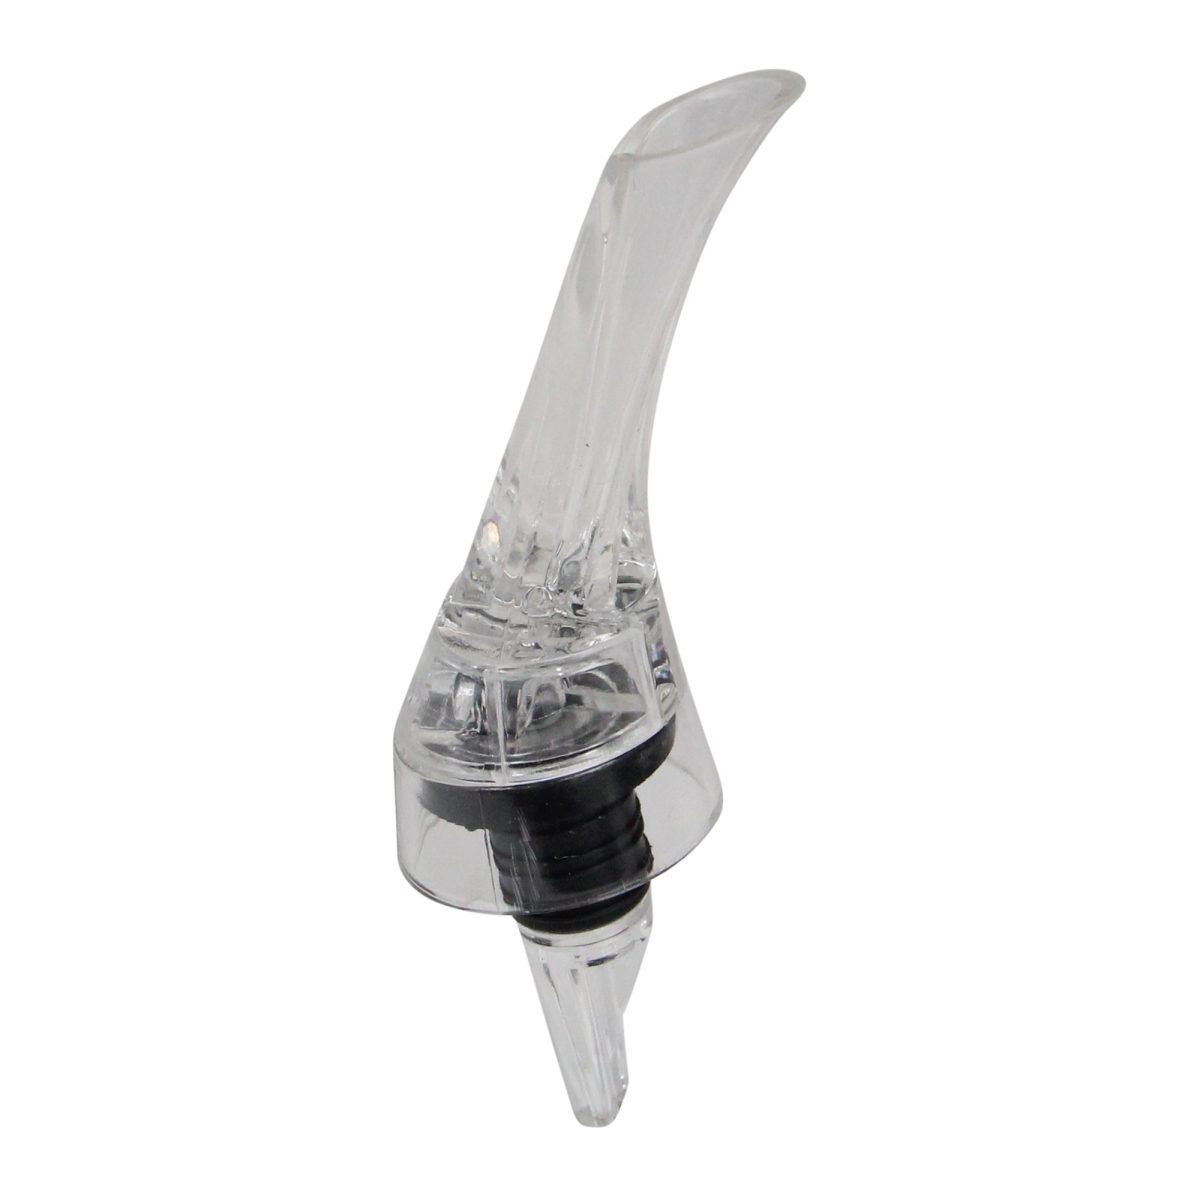 Picture of Avon 33537537 7 in. Plastic Non Spill Wine Aerator - Clear & Black